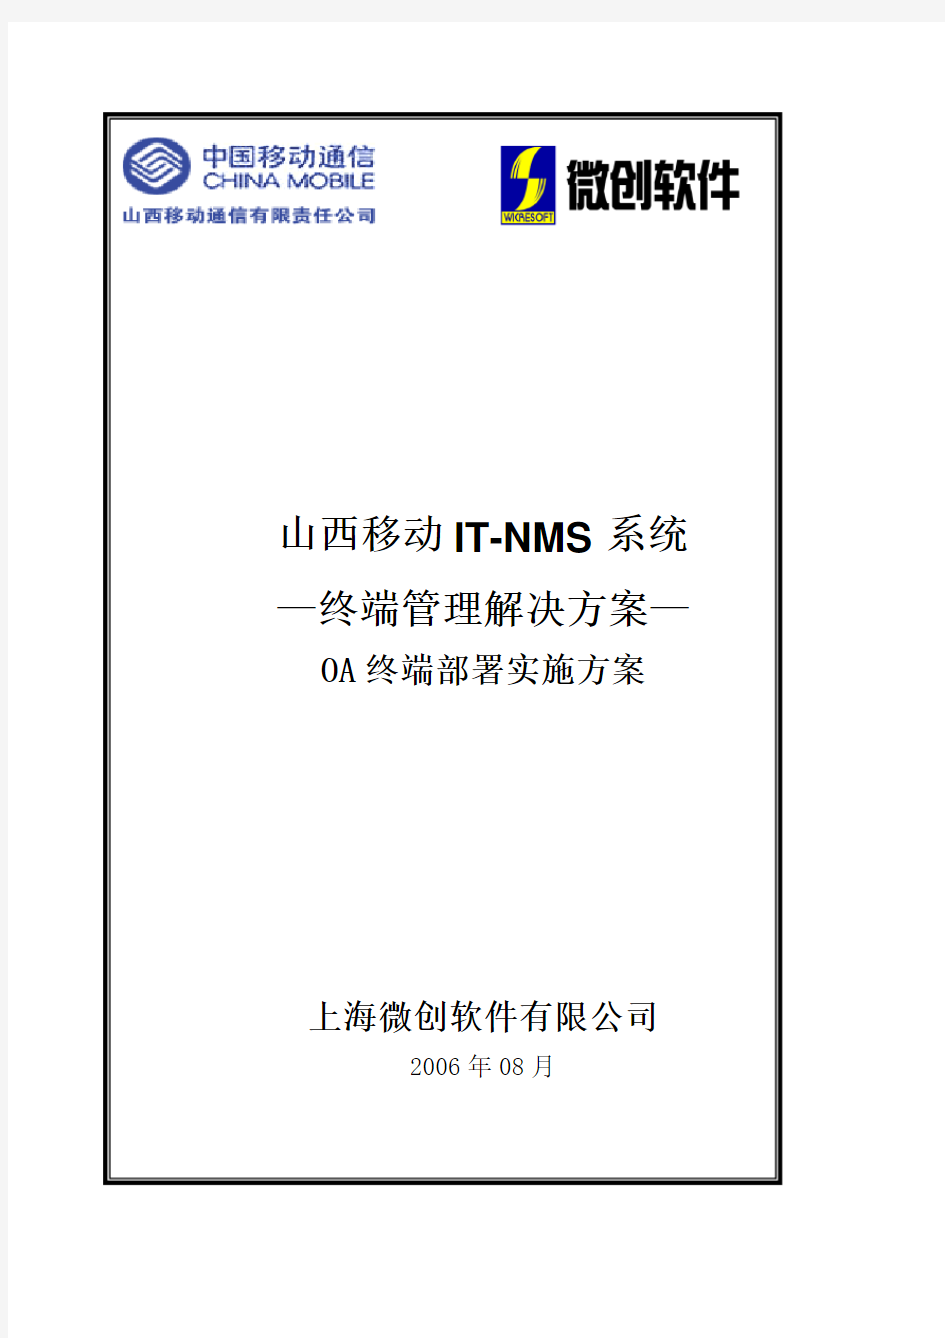 IT-NMS系统终端管理(OA)解决方案客户端实施培训手册